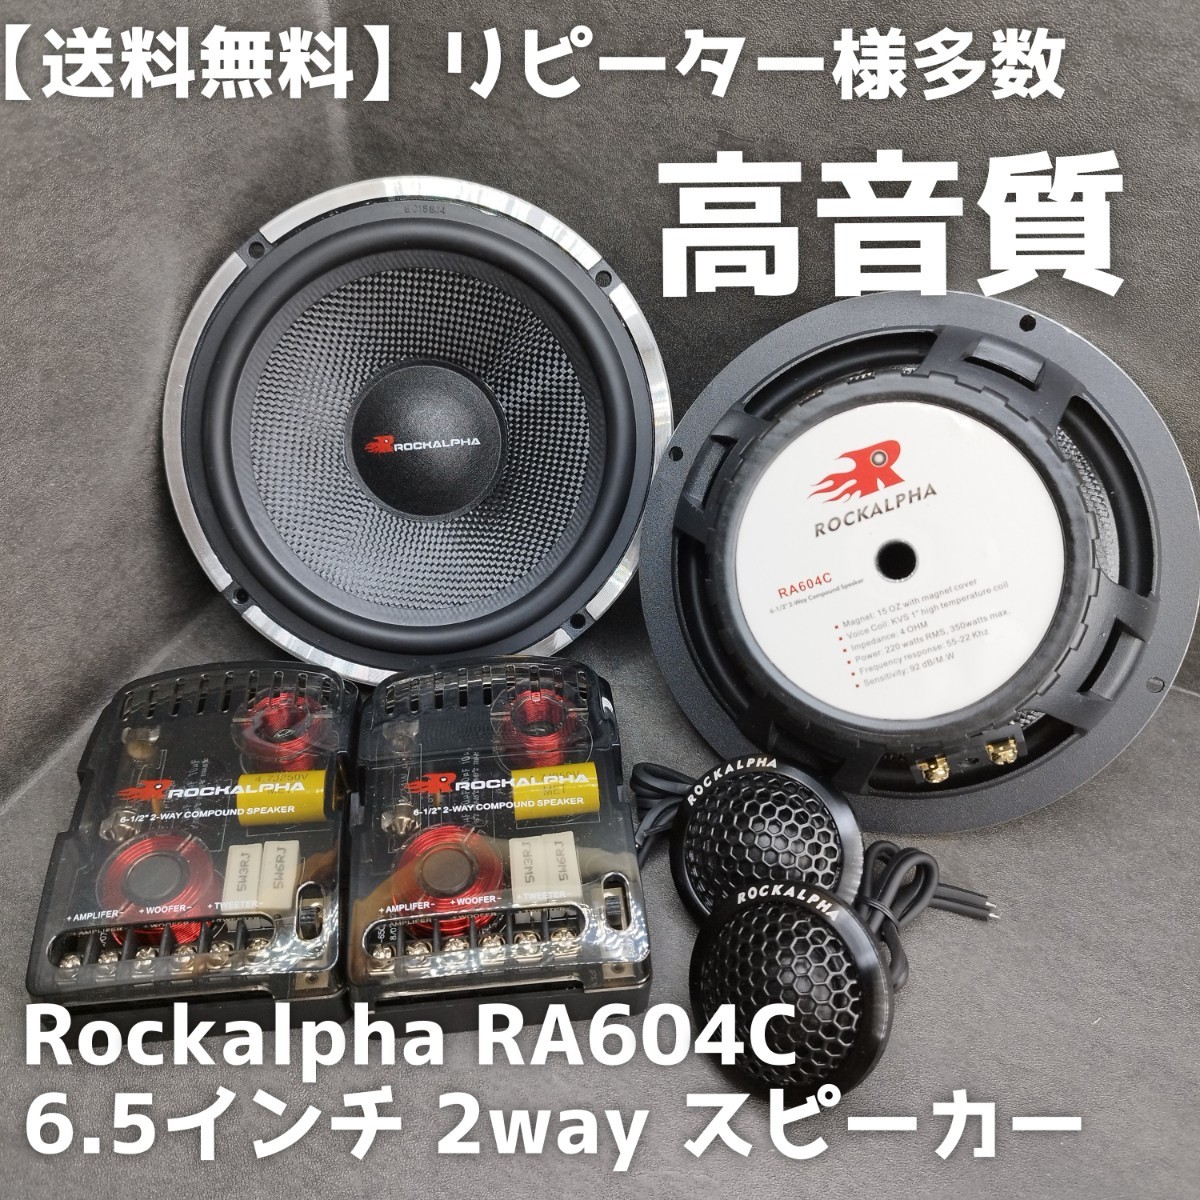 【送料無料】ハイエンド【高音質】Rockalpha RA604C 6.5インチ 17cm 2way セパレート スピーカー カーオーディオ ツイーター ウーファーの画像1